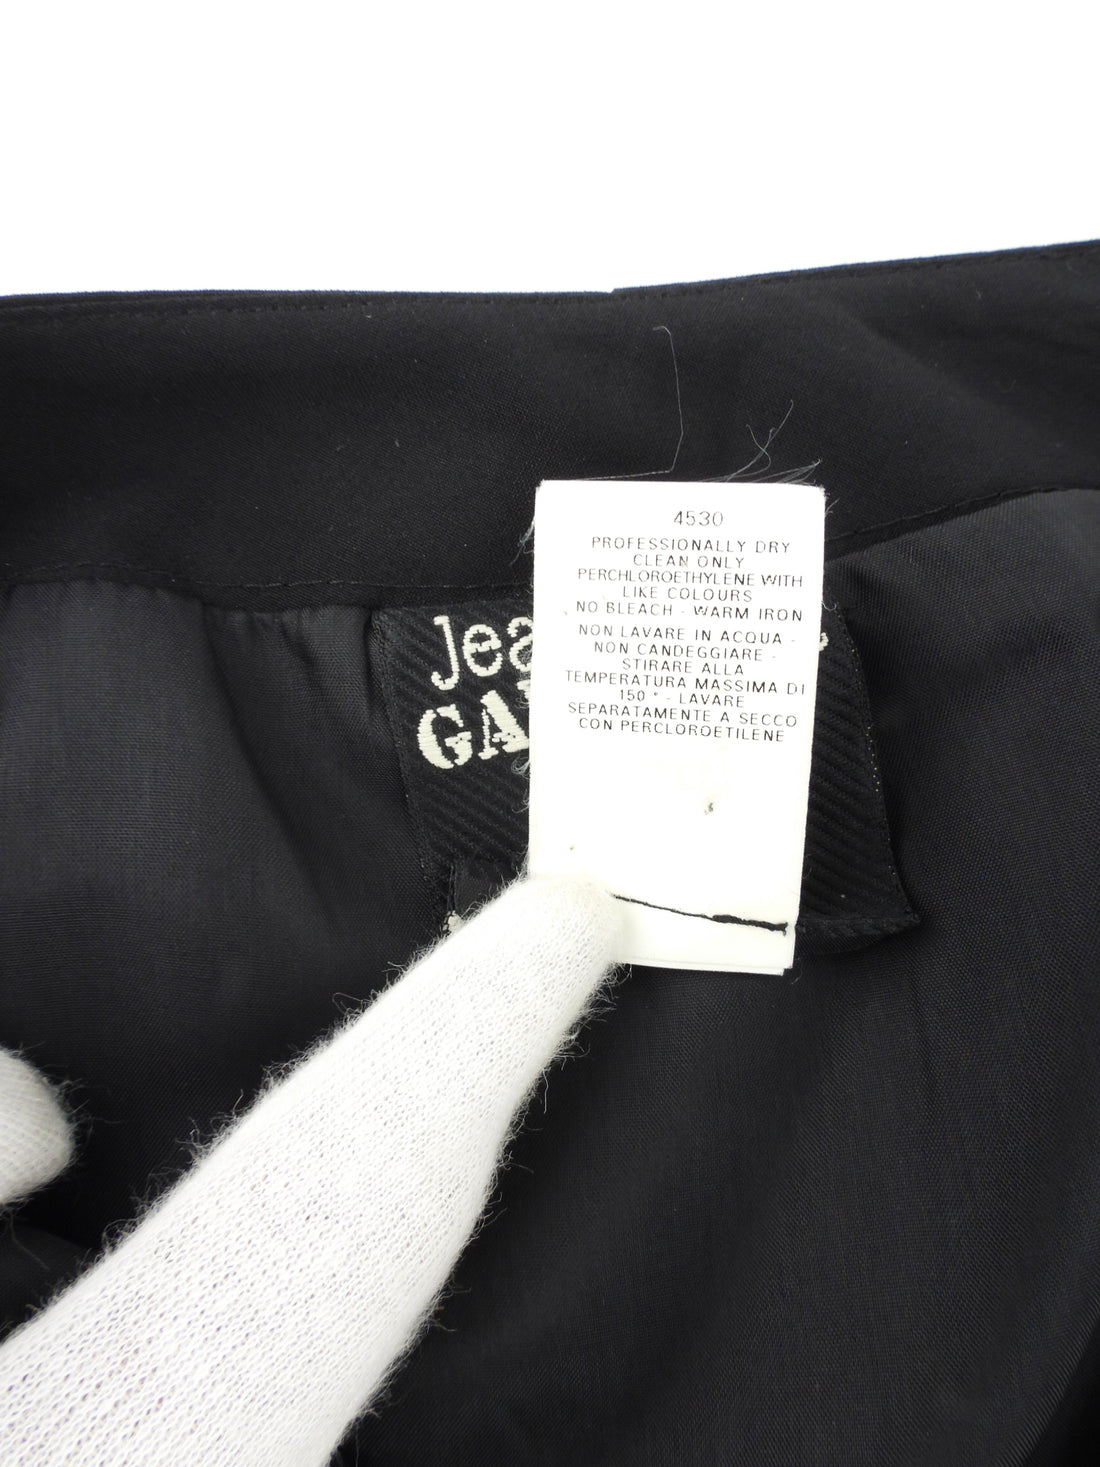 Jean Paul Gaultier Femme Vintage Black Virgin Wool Anorak Midi Skirt - 42 / 8